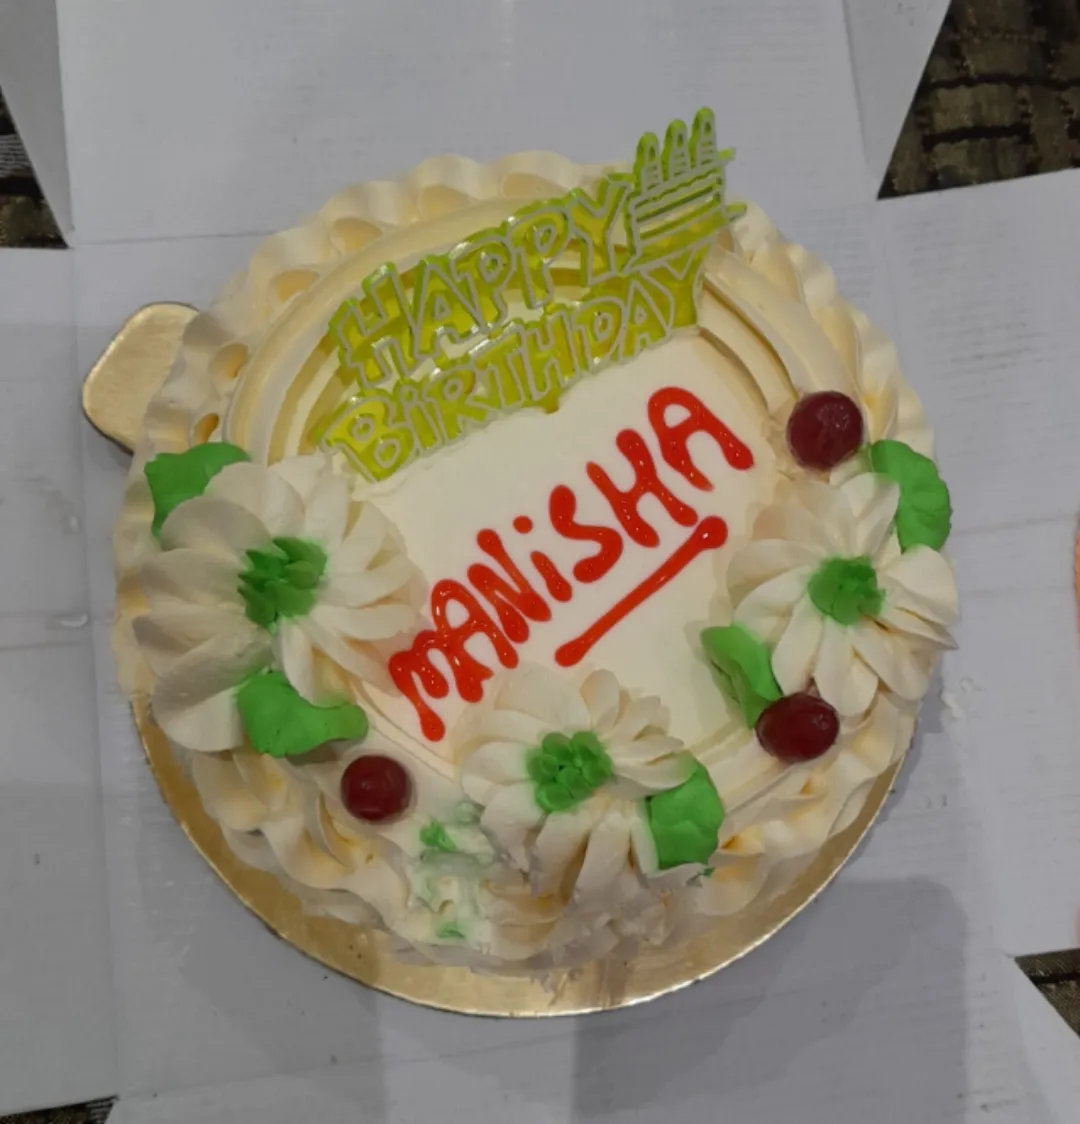 Anisha Happy Birthday Cakes Pics Gallery